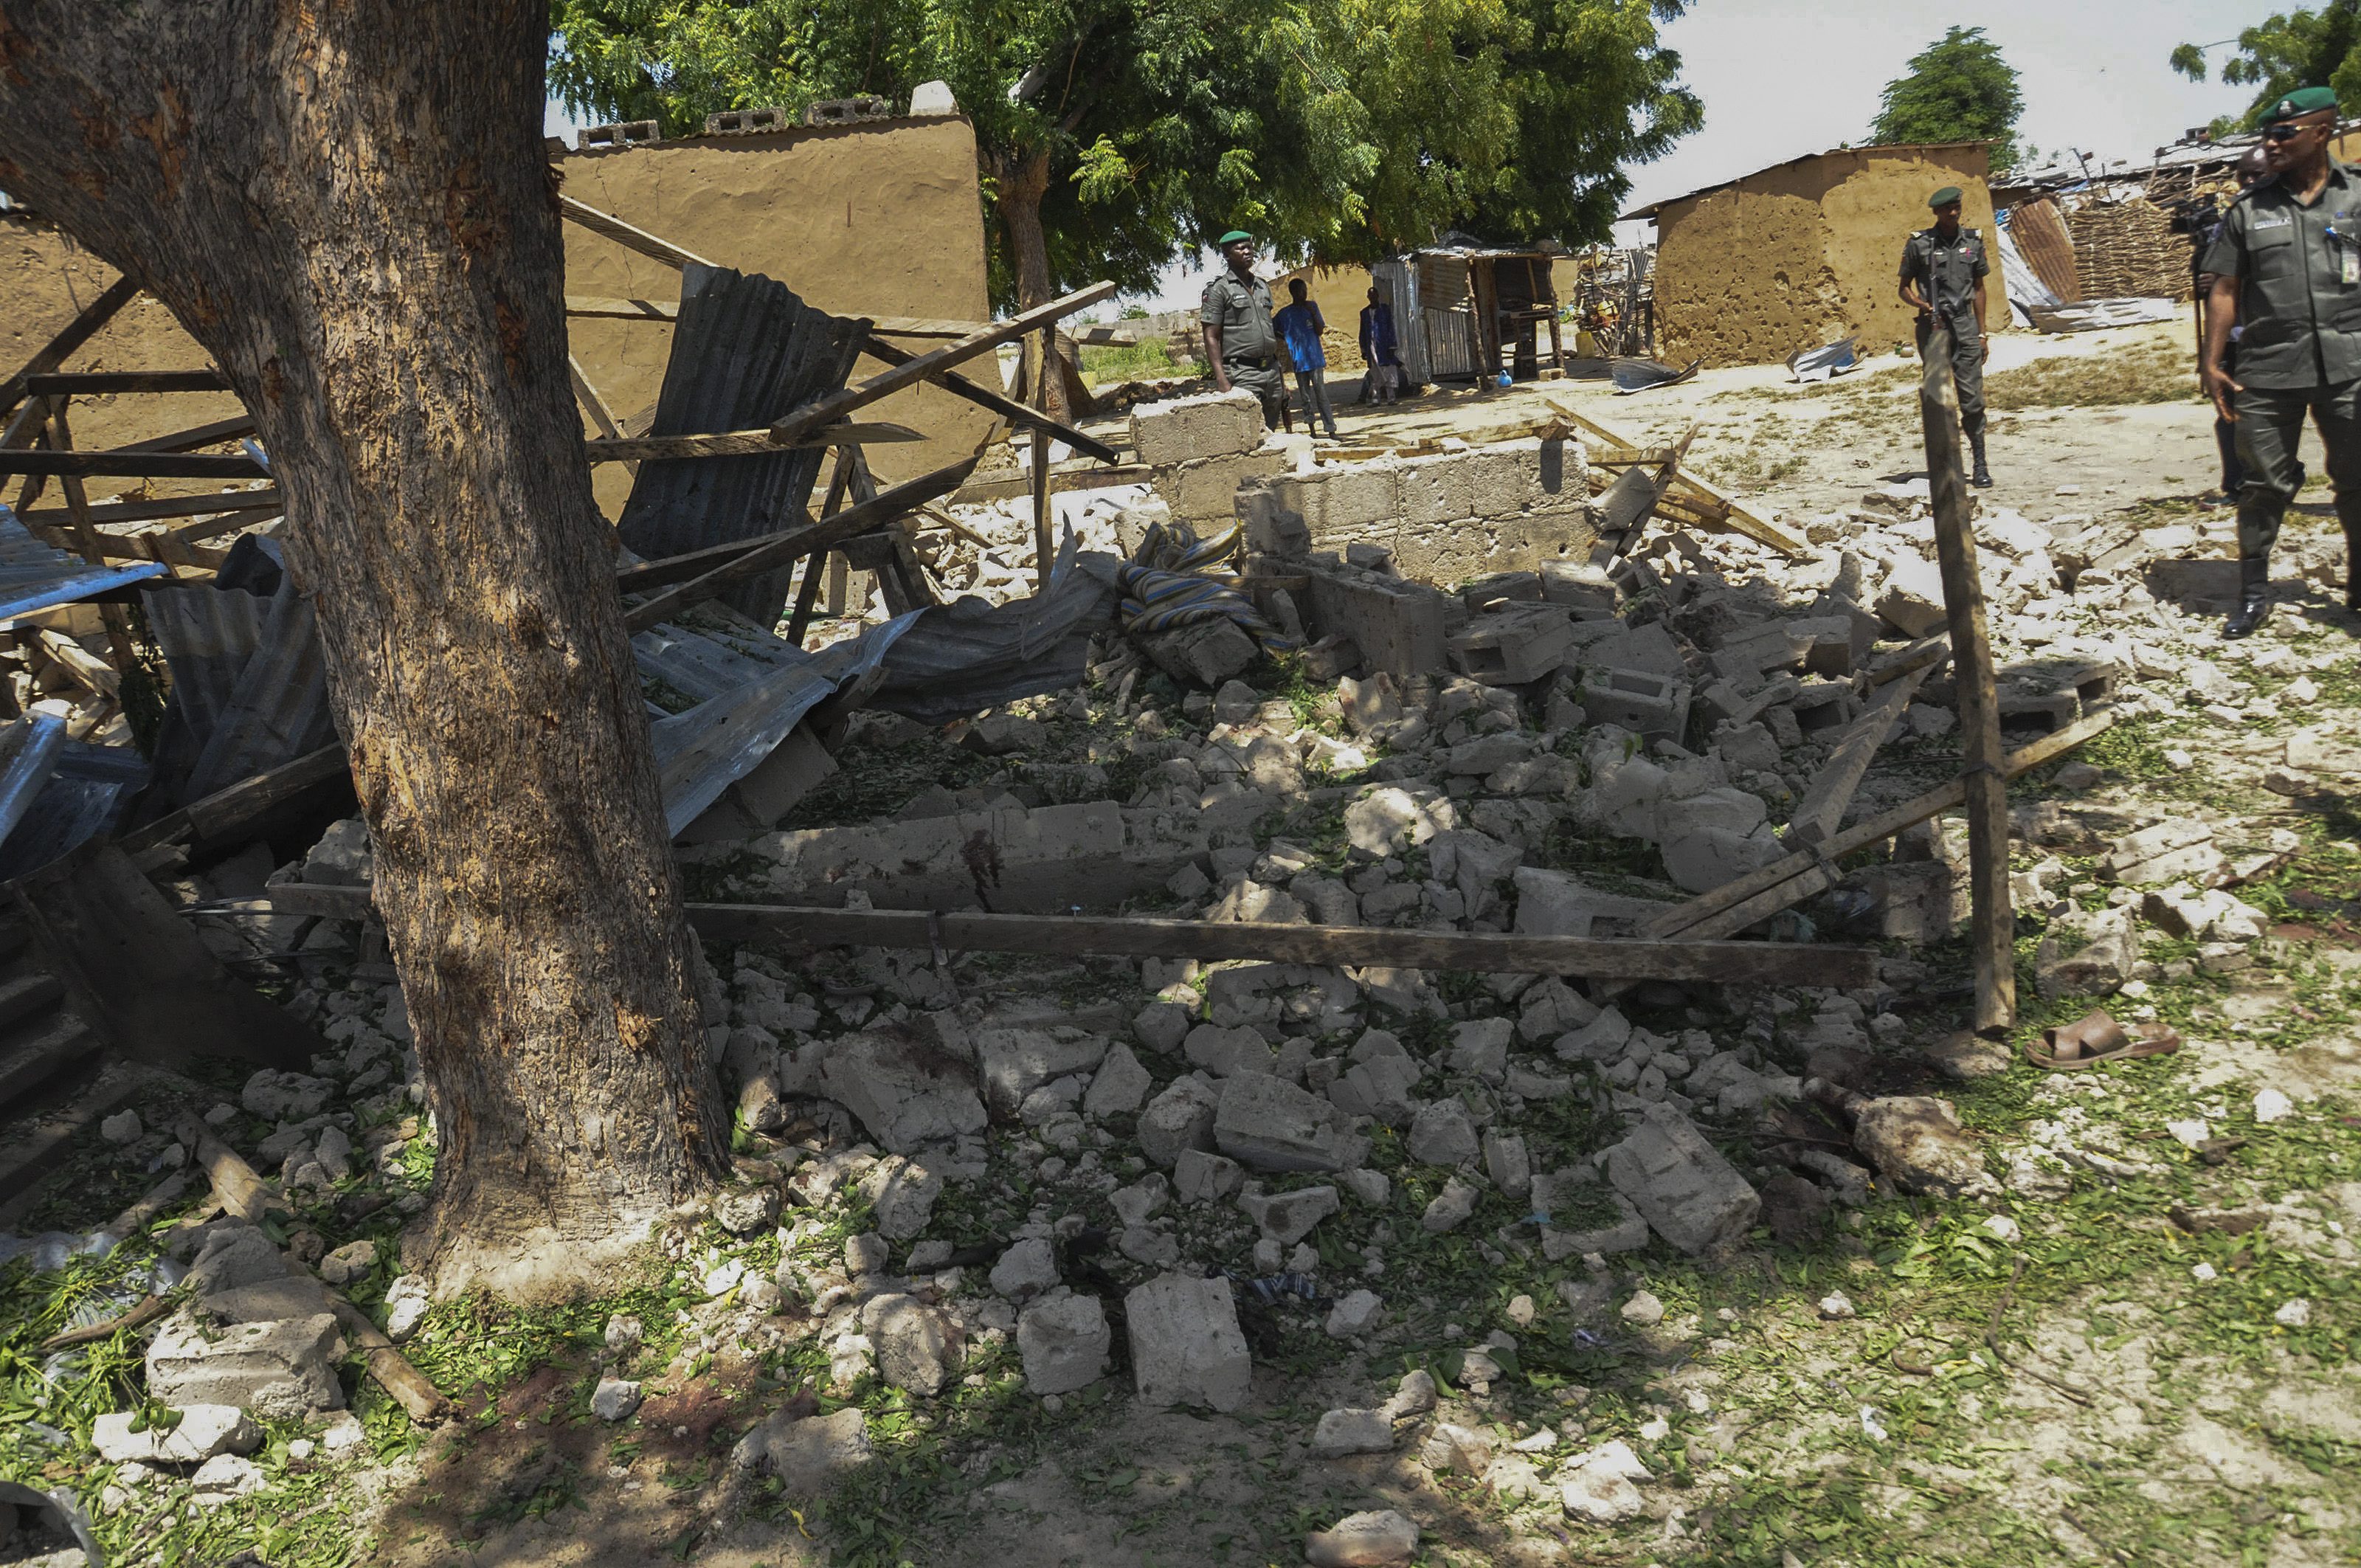 Cinci femei kamikaze au comis atacuri sinucigase, in Camerun si Nigeria. Atentatele ar fi comise de gruparea Boko Haram